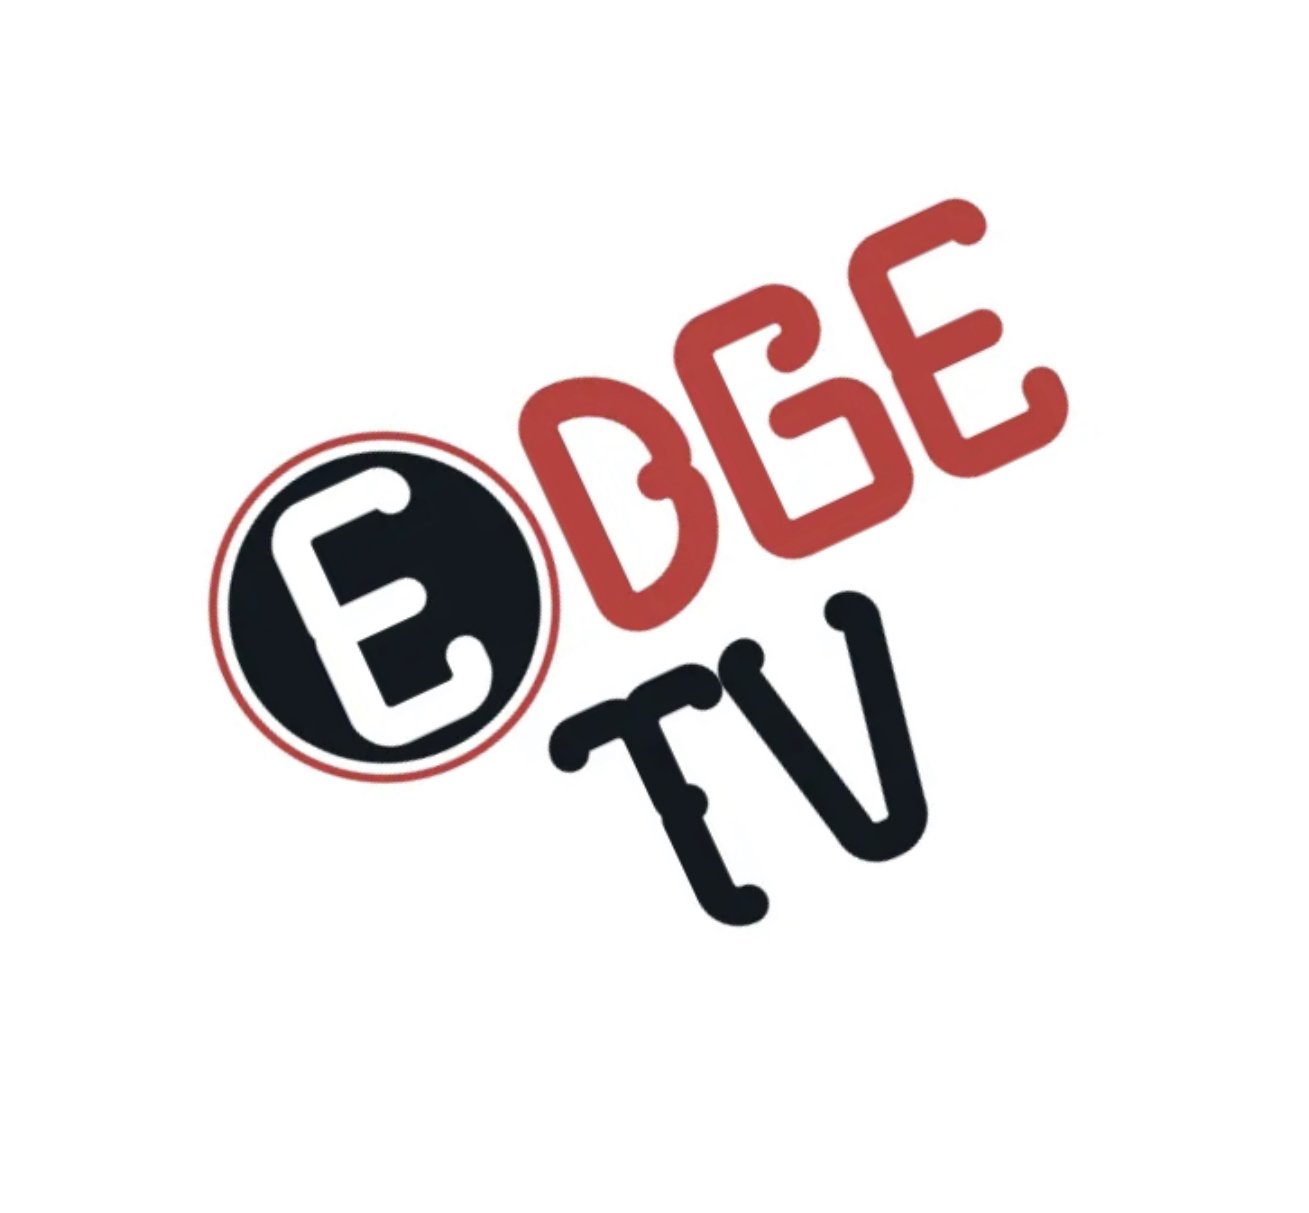 Edge Tv